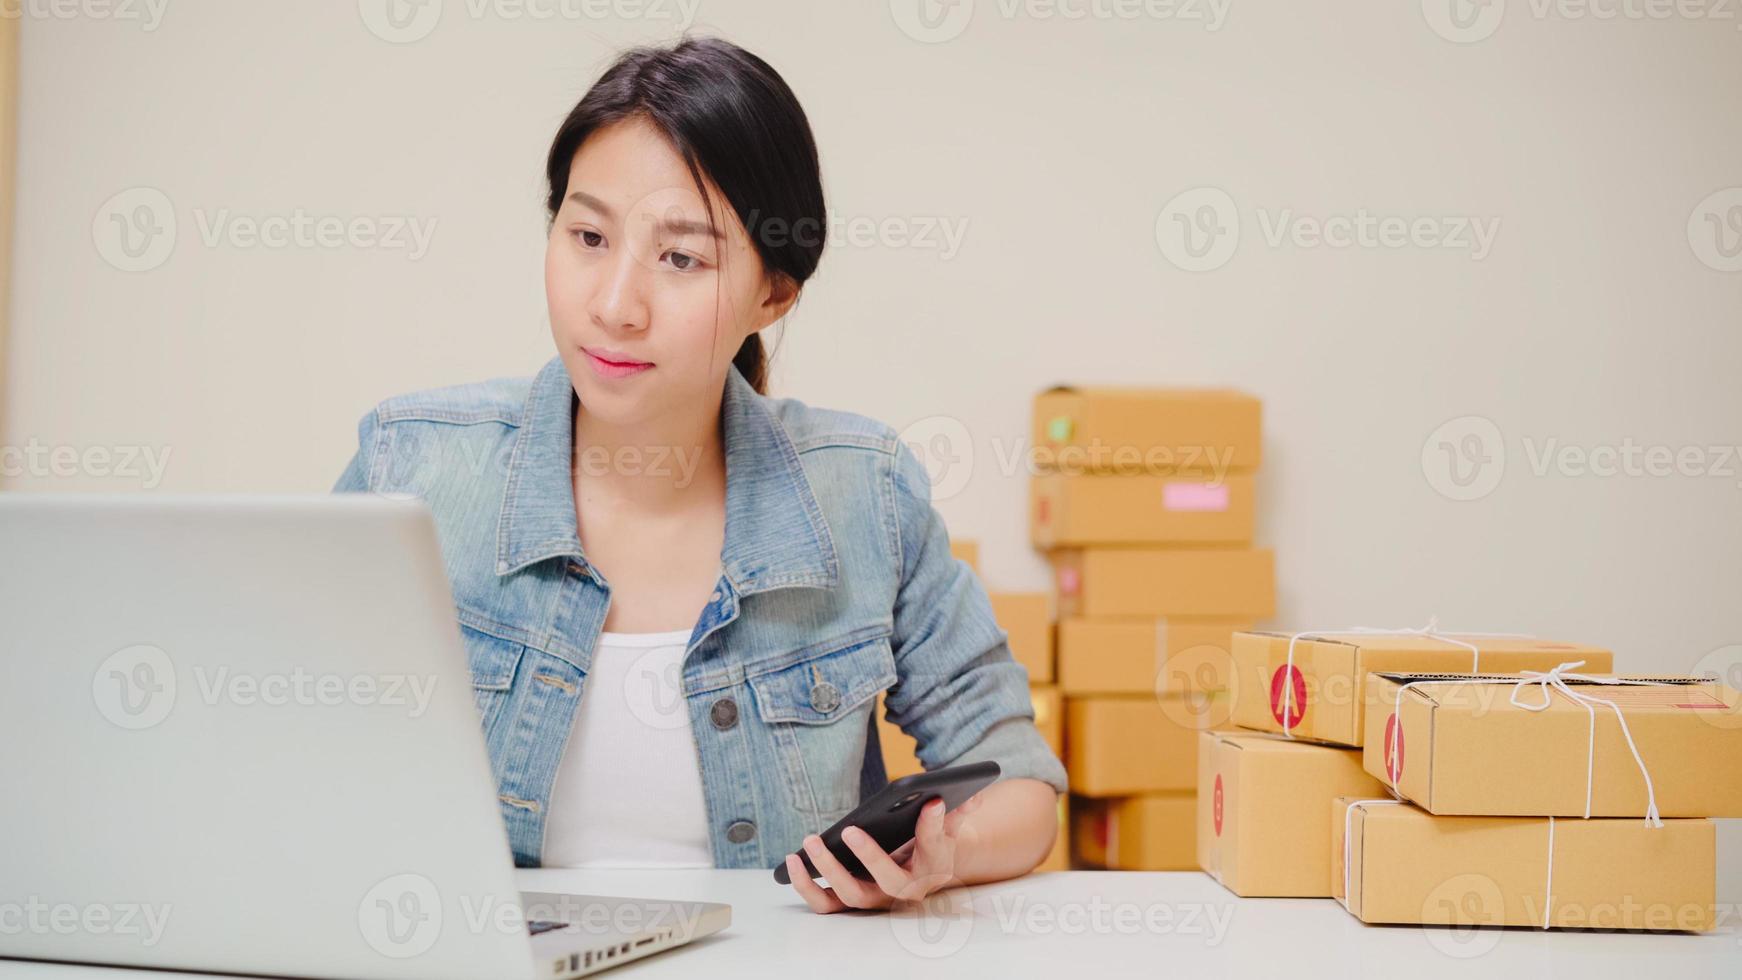 giovane imprenditore asiatico intelligente donna d'affari proprietaria di PMI online che controlla il prodotto in magazzino e salva sul laptop che lavora a casa. piccolo imprenditore al concetto di home office. foto